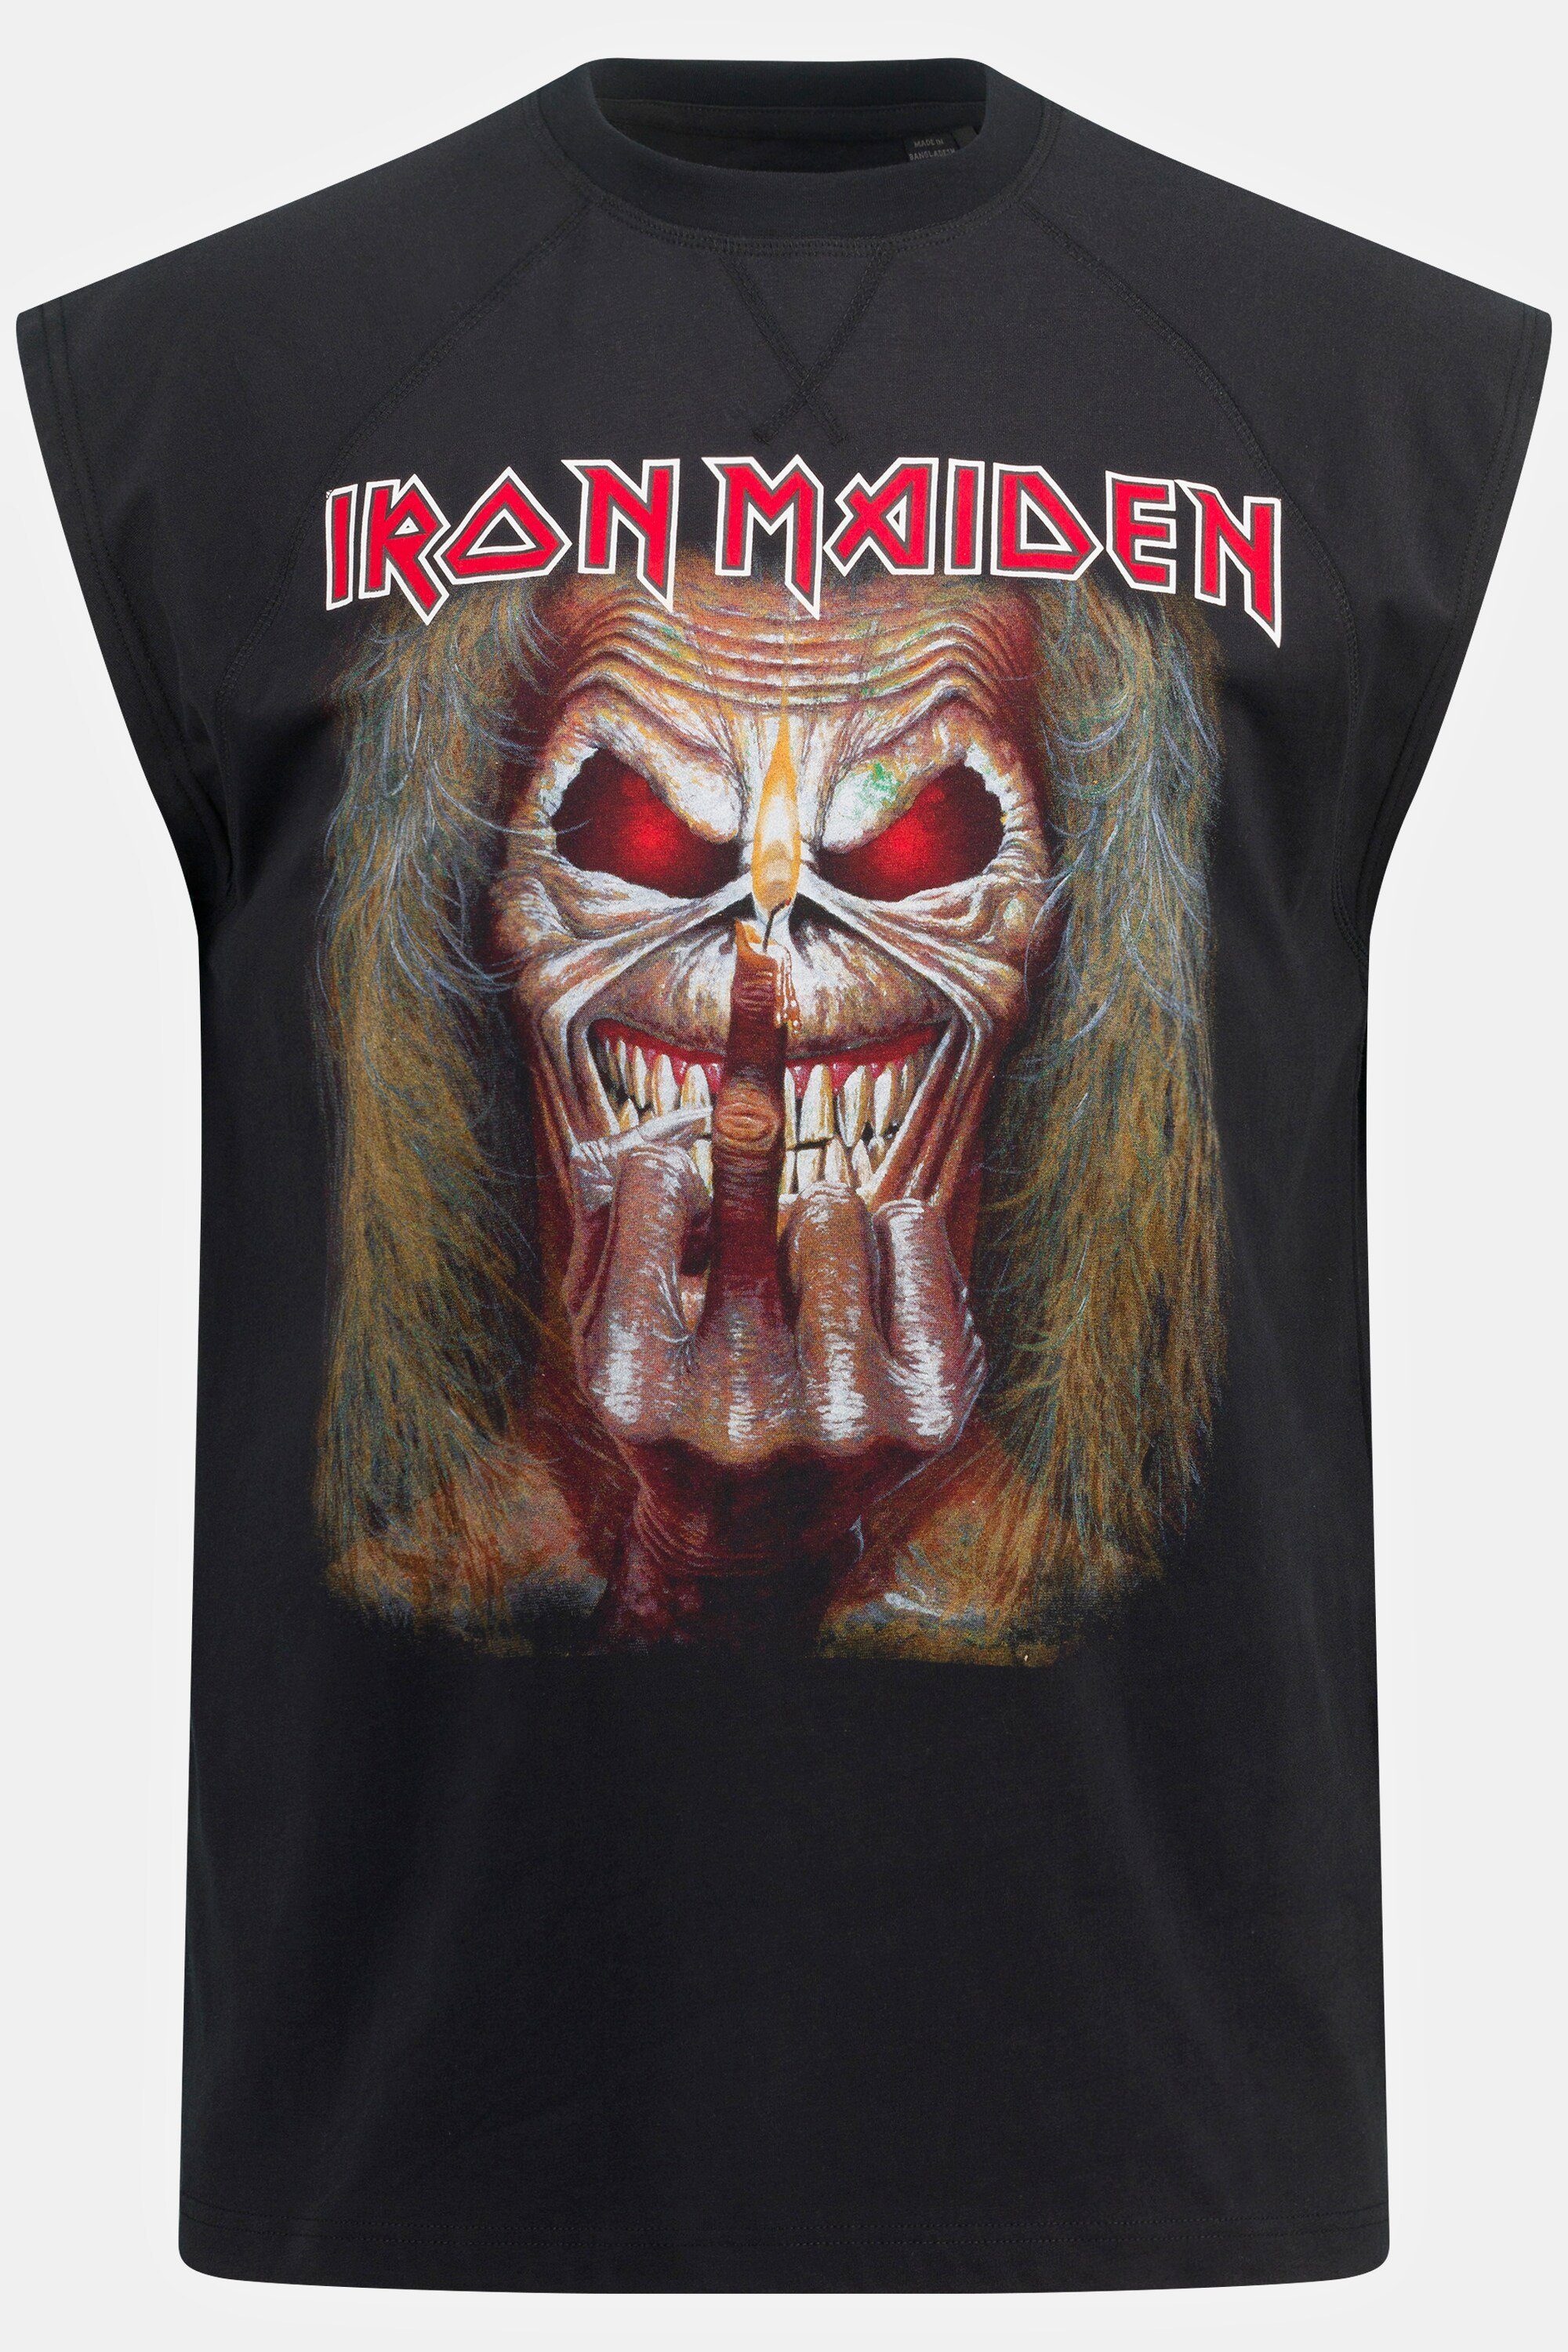 Tanktop Maiden T-Shirt JP1880 Bandshirt Iron